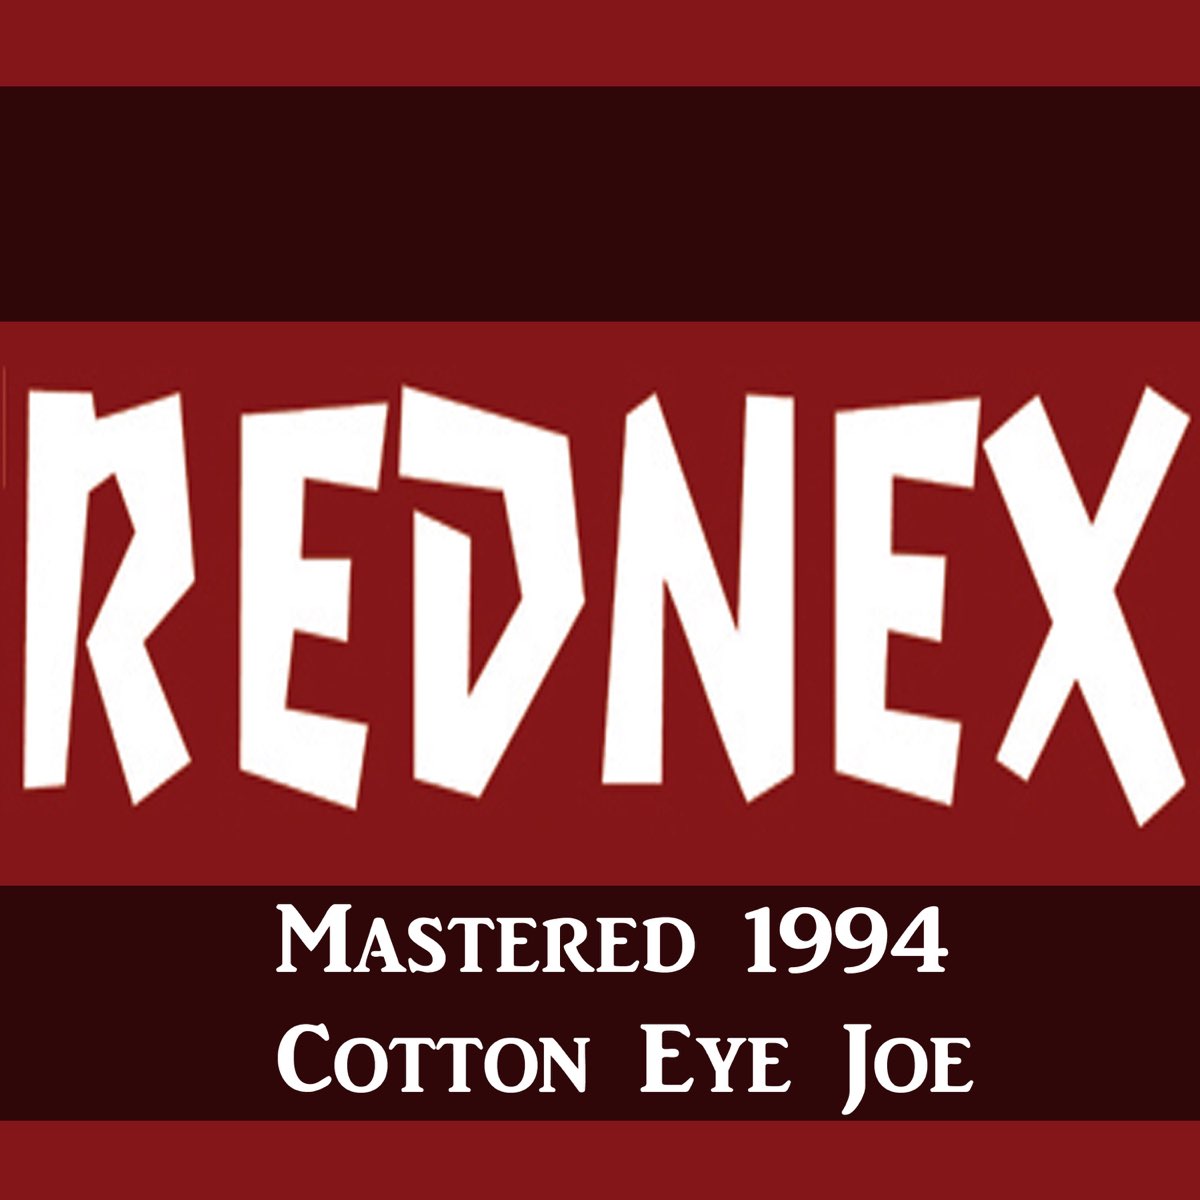 Cotton eye joy. Rednex Cotton Eye Joe. Rednex - Cotton Eye Joe обложка. Cotton Eye Joe (1994) Rednex. Rednex Cotton Eye Joe Remix.